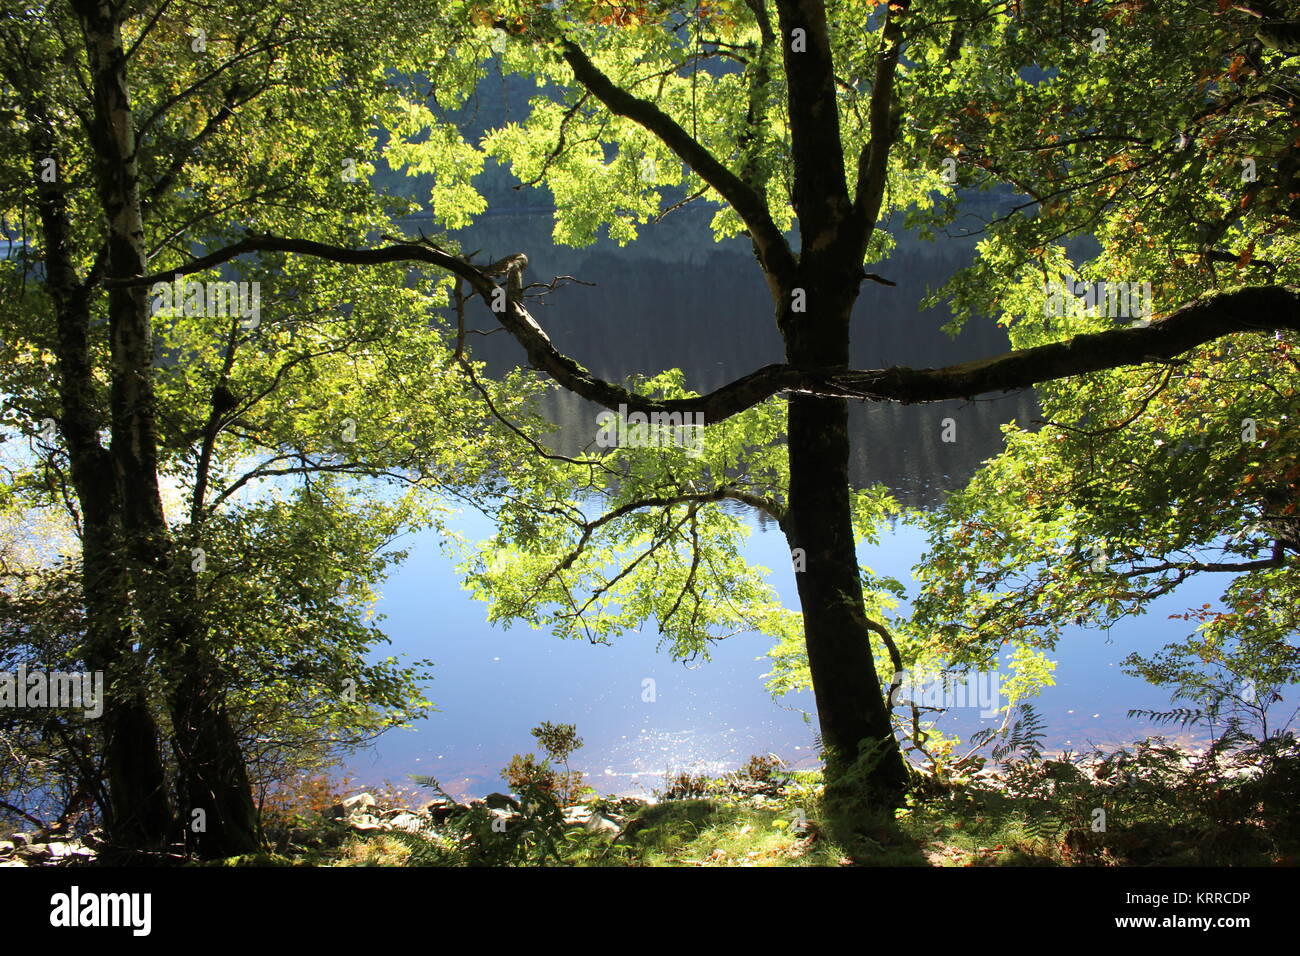 Los árboles con hojas retroiluminada por Sunshine, depósito Garreg-Ddu,Elan Valle, Powys, Gales Foto de stock